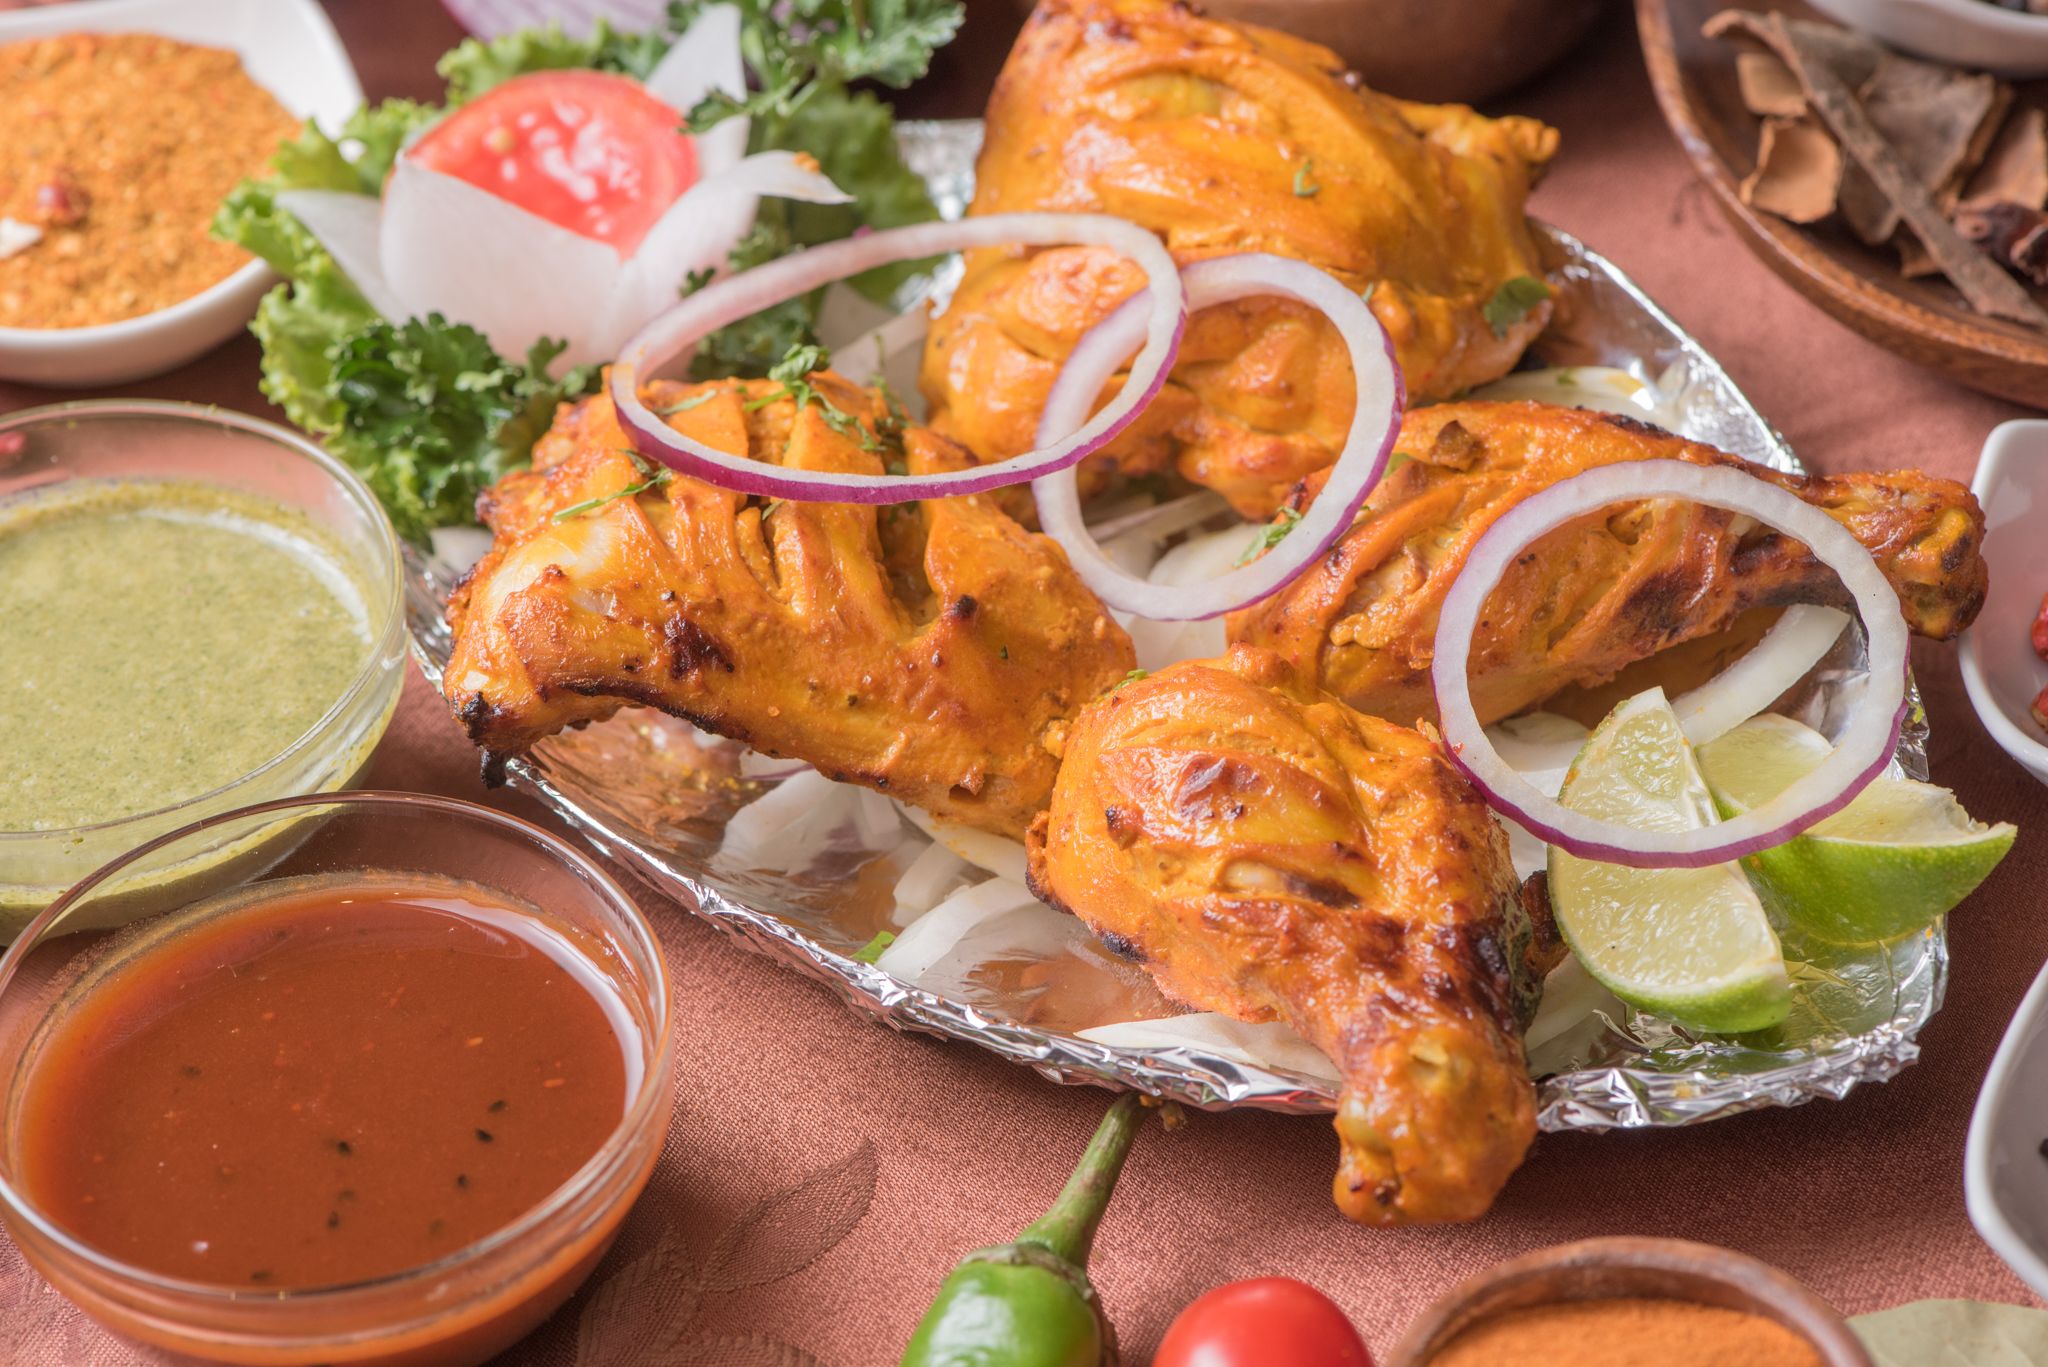 印度招牌酸乳烤雞 Tandoori Chicken 自製優格搭配特製香料醃製的雞腿以坦都窯烤爐高溫炭烤，印度指標性的美食